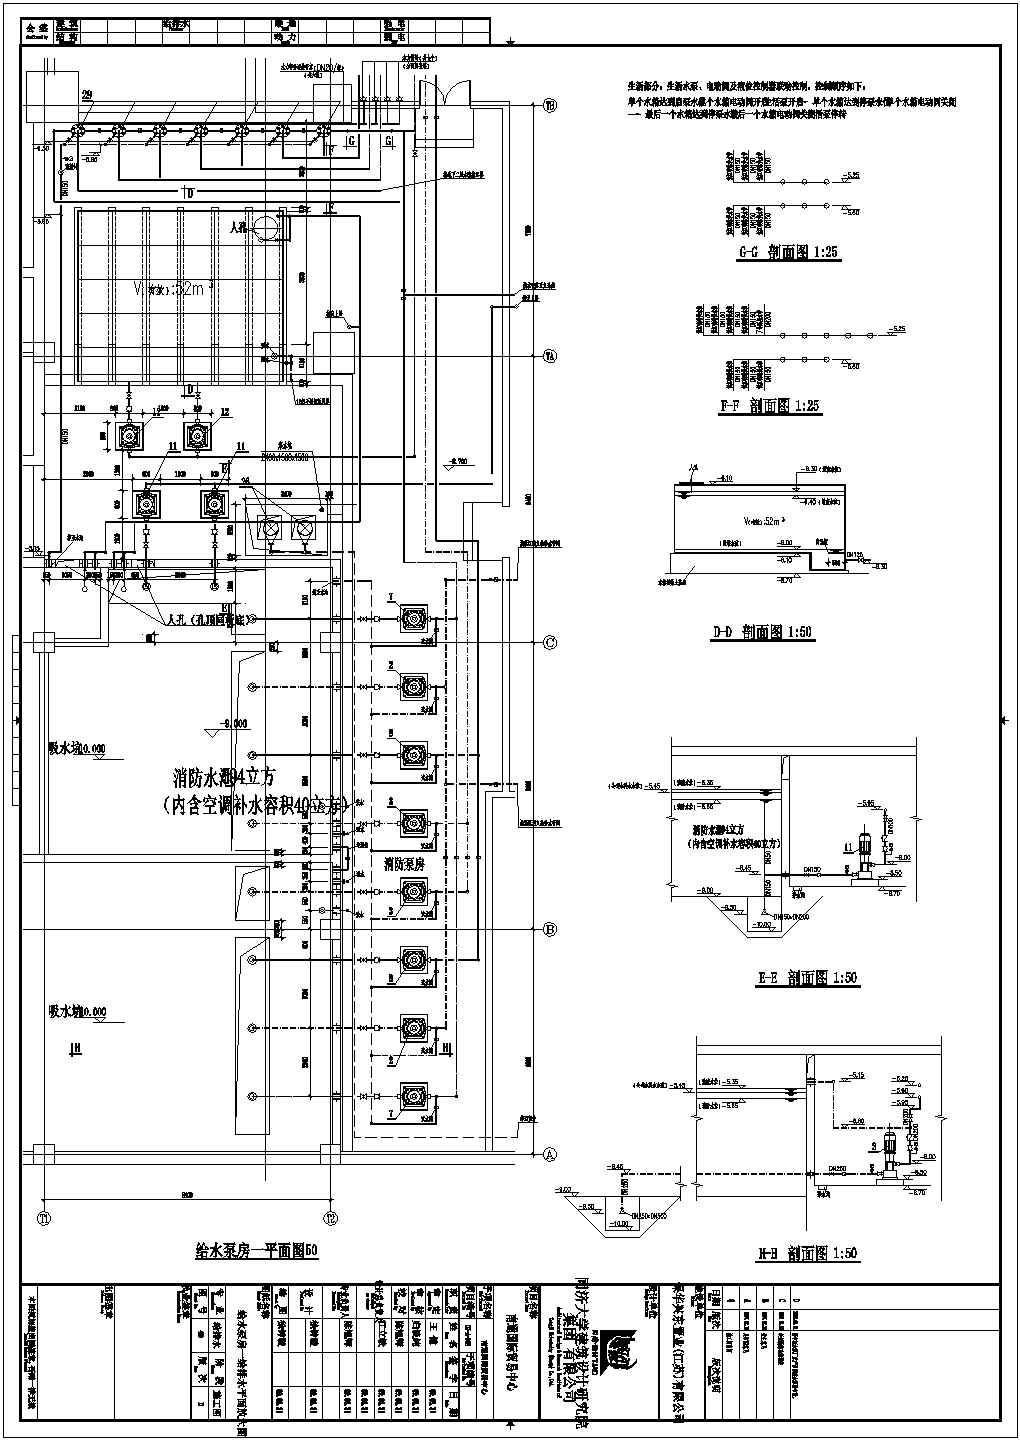 南通国际贸易中心设备机房详细建筑施工图